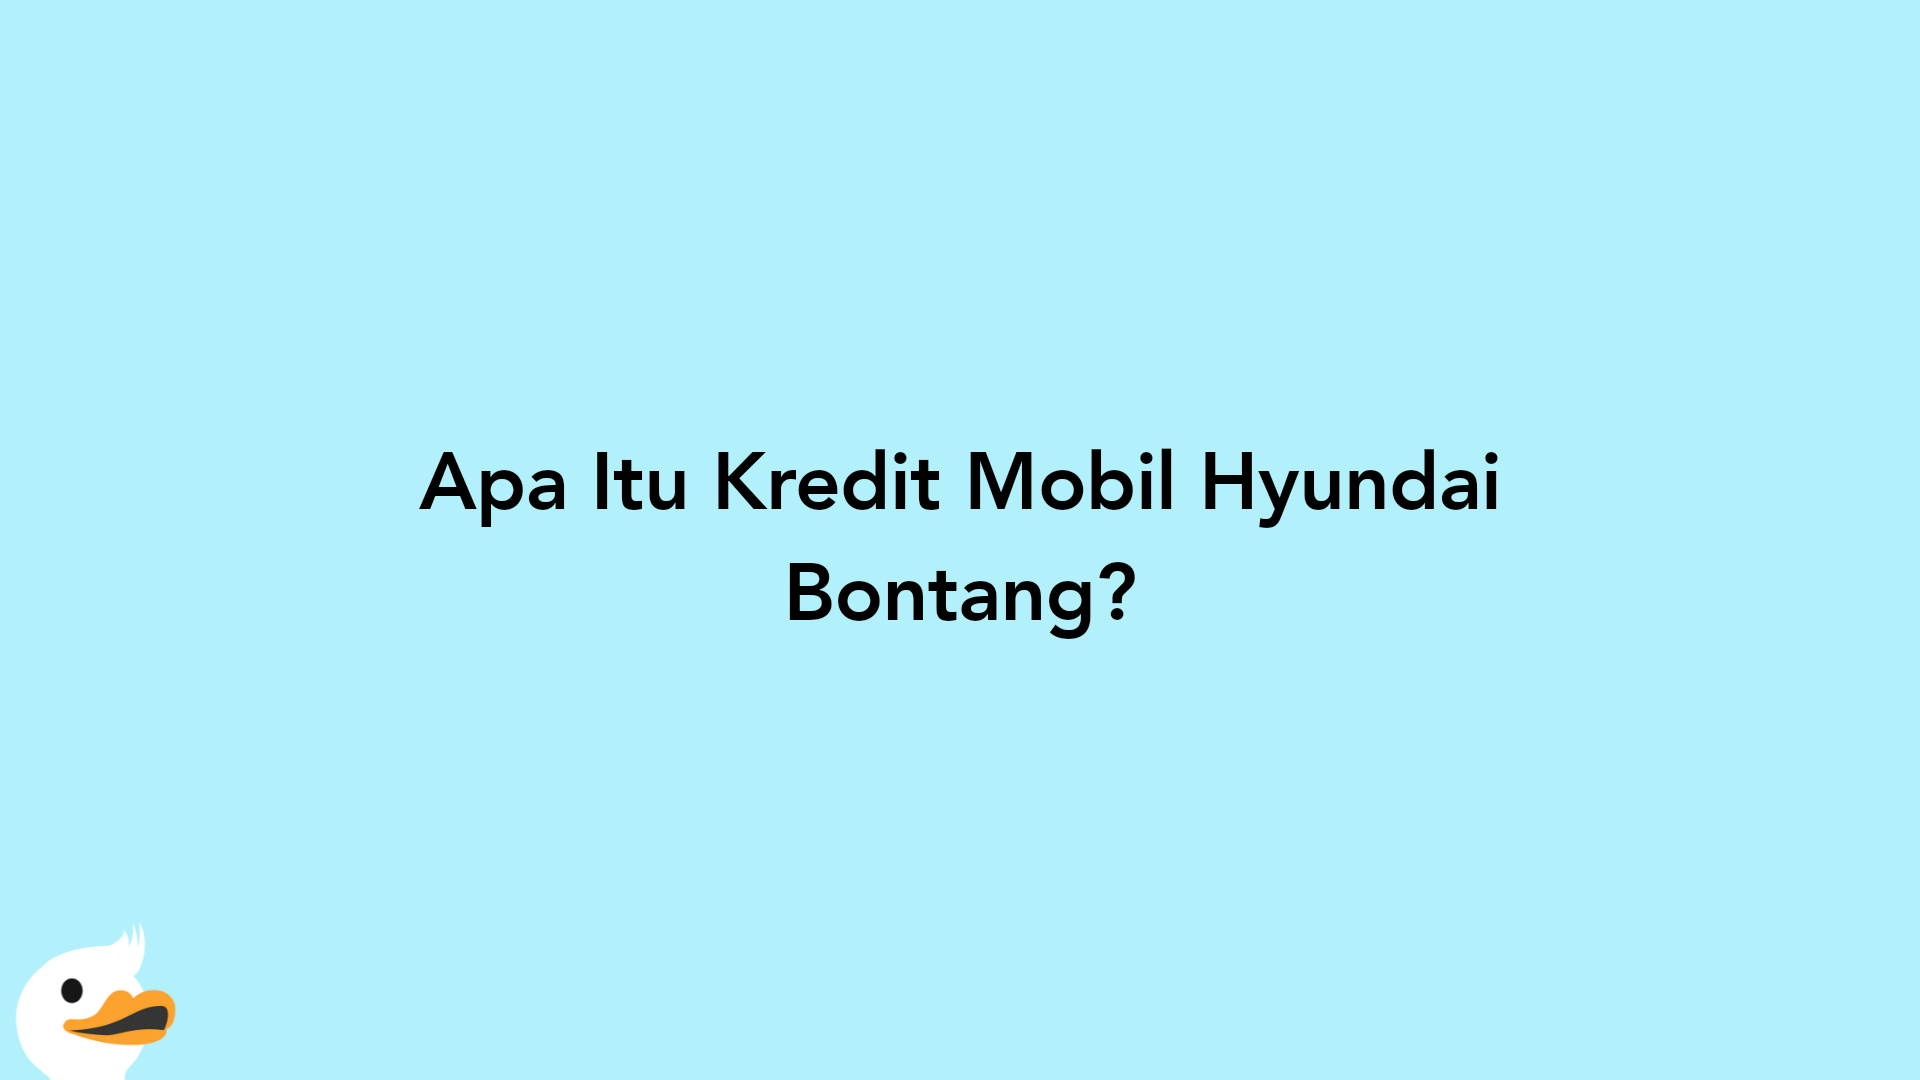 Apa Itu Kredit Mobil Hyundai Bontang?